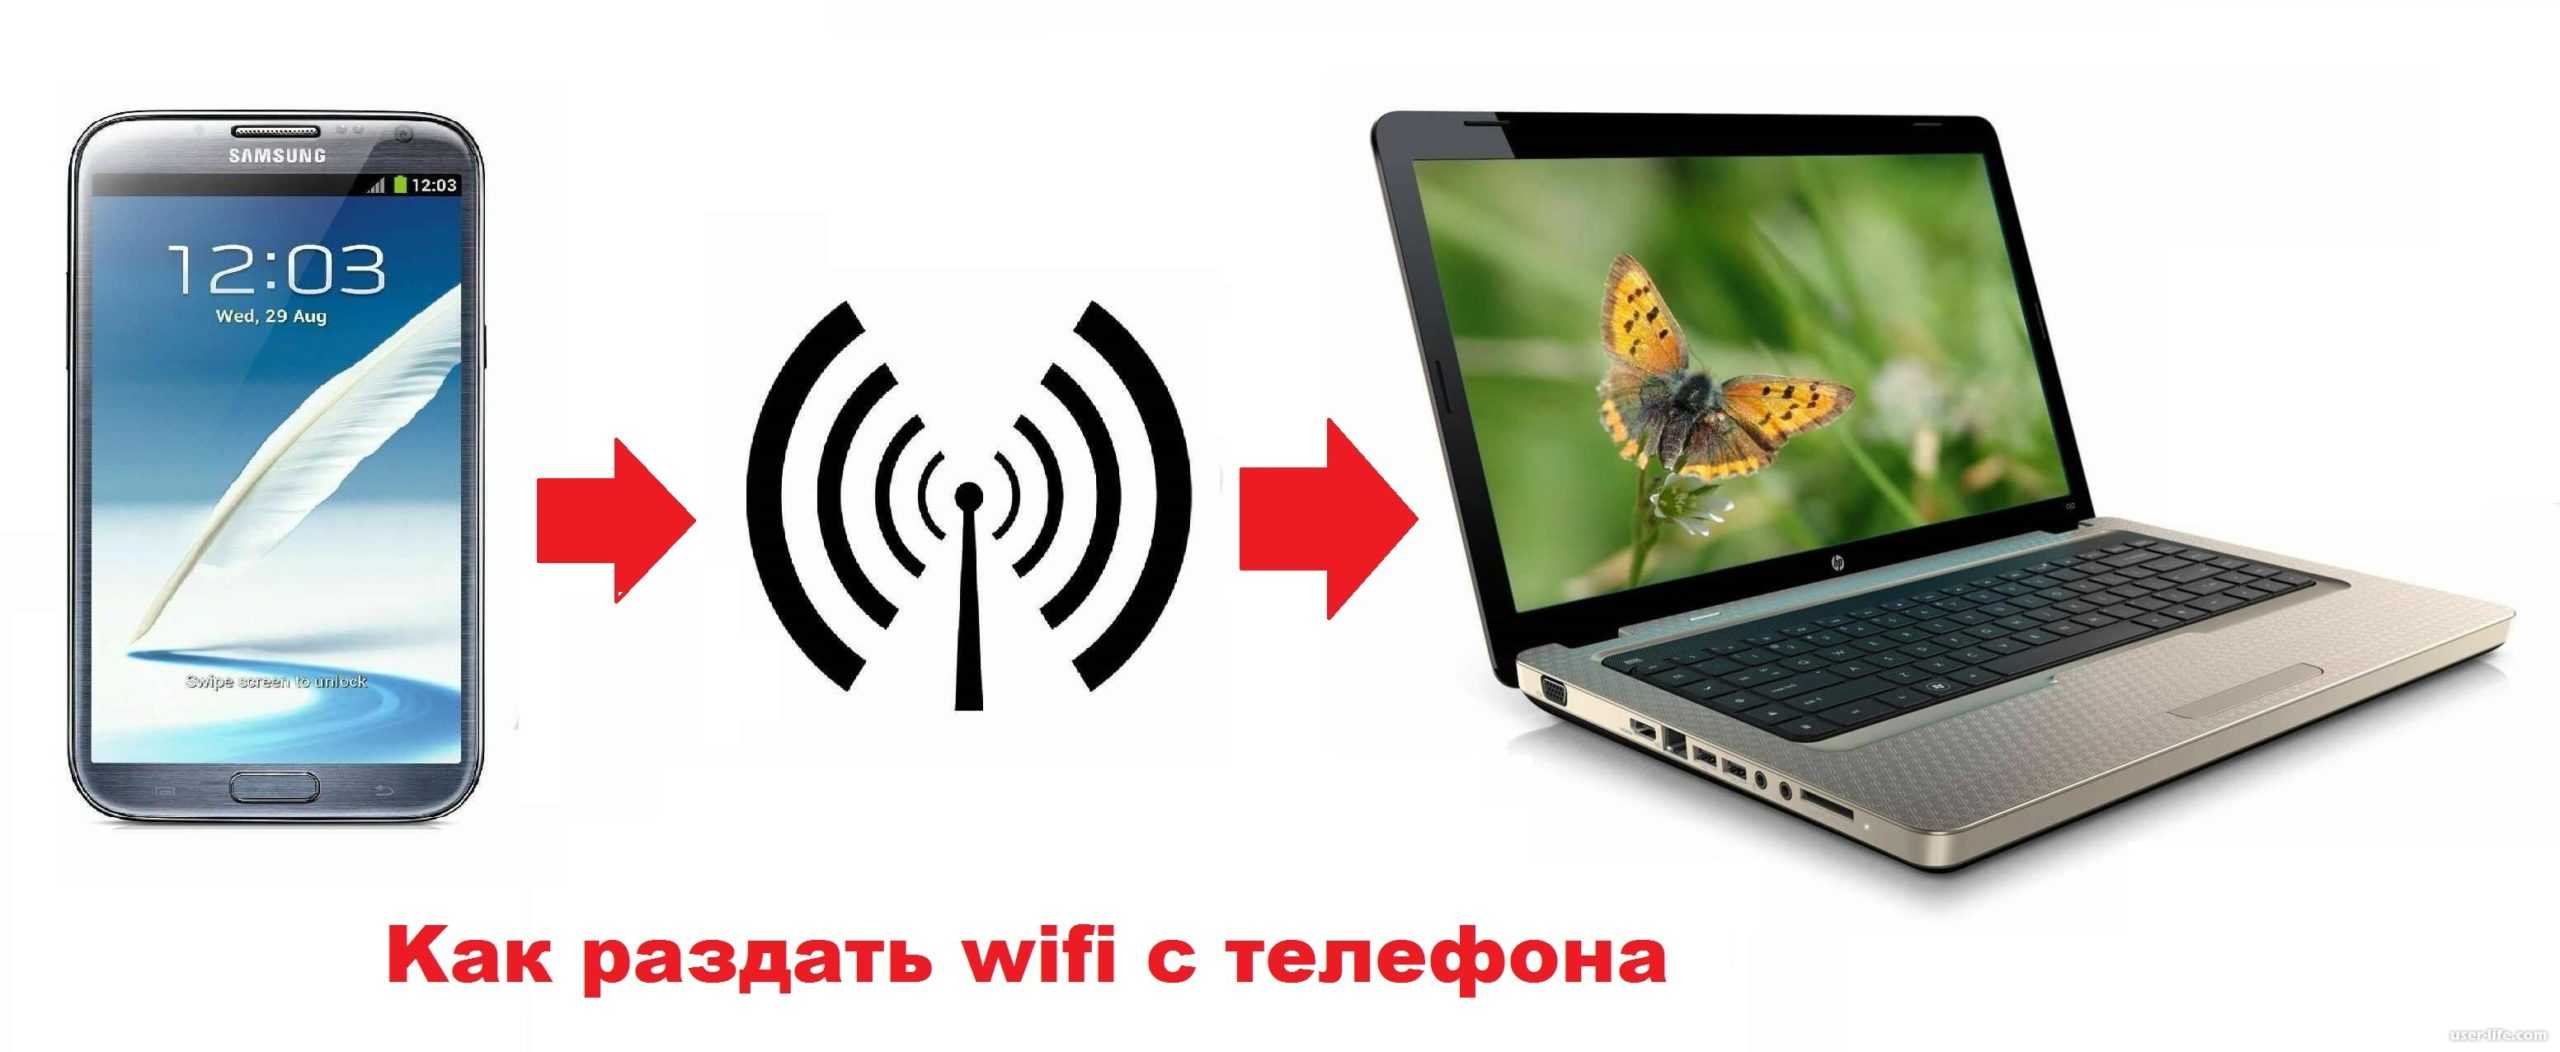 Раздача wifi (wi-fi) с ноутбука: 5 способов настройки, возможные проблемы